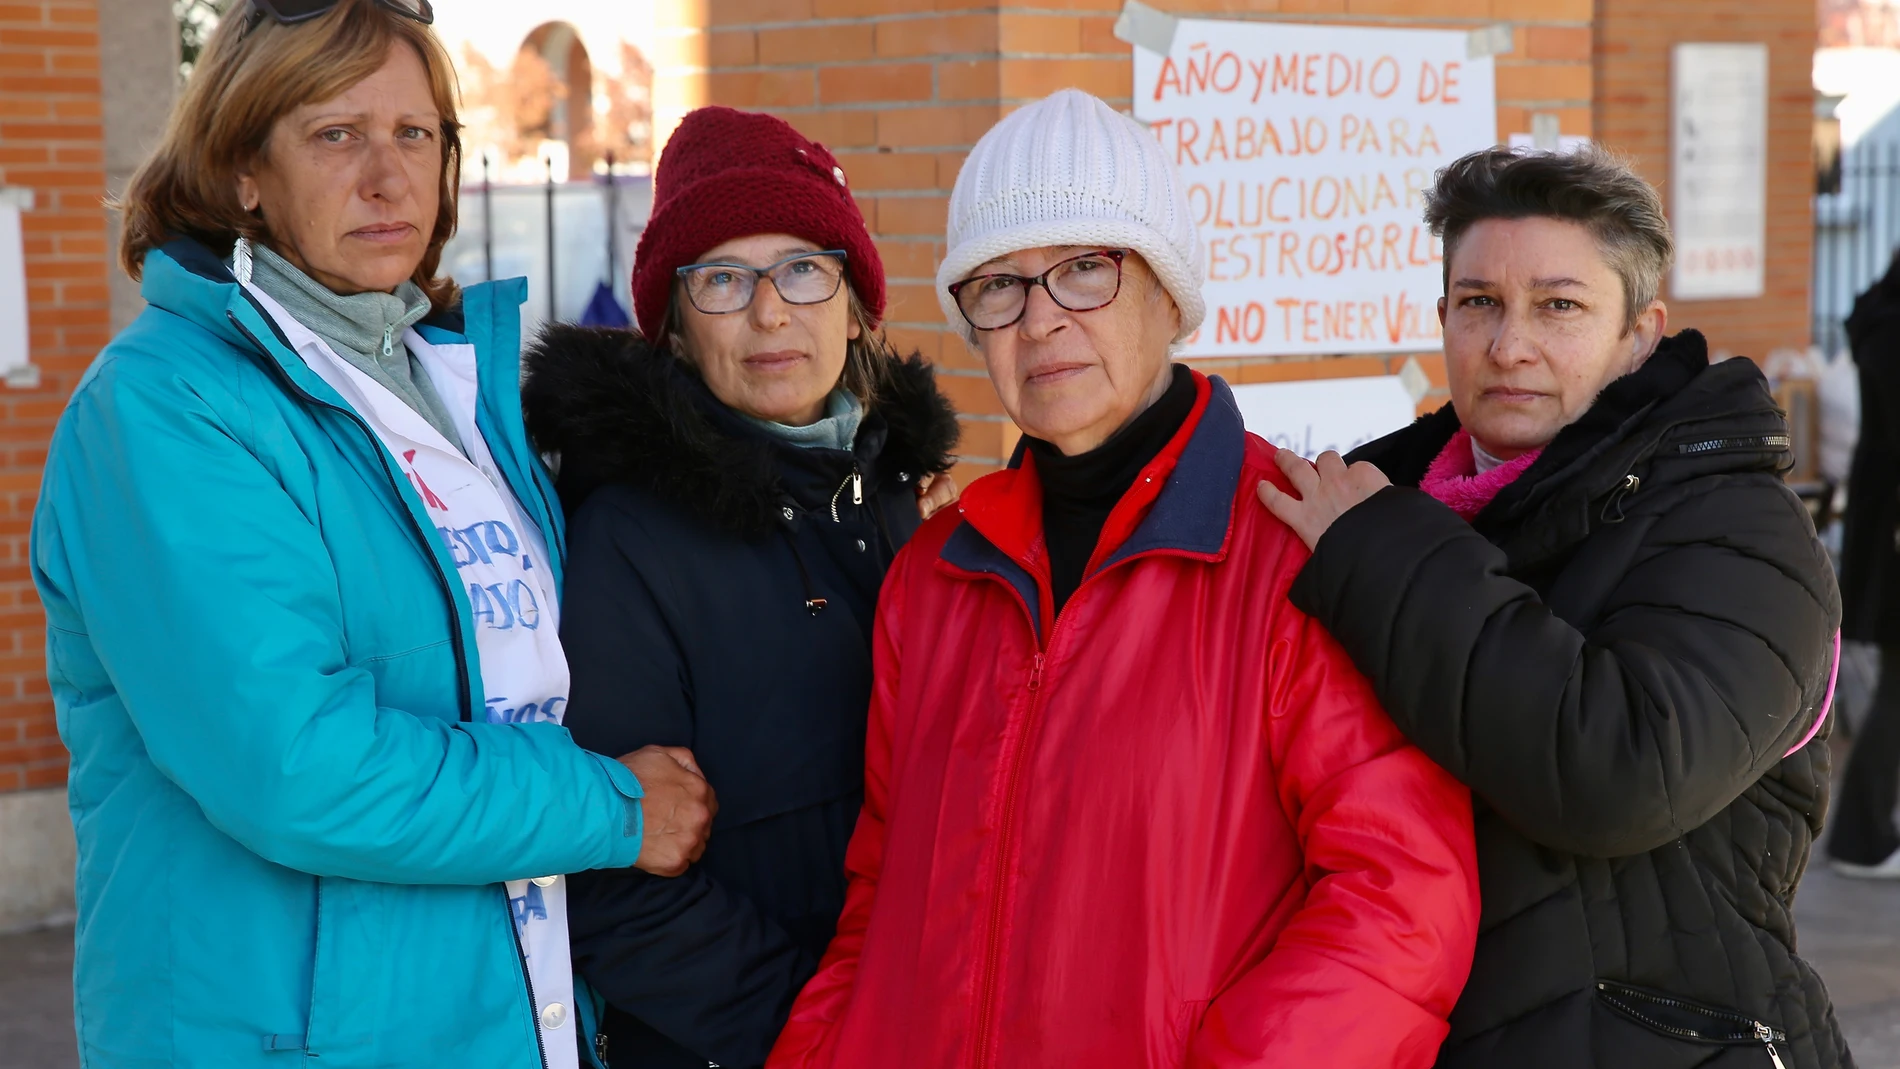 Eva, Carmen, Teresa y Josefina, auxiliares de ayuda doméstica, acampan a las puertas del Ministerio de Trabajo para protestar por su situación laboral